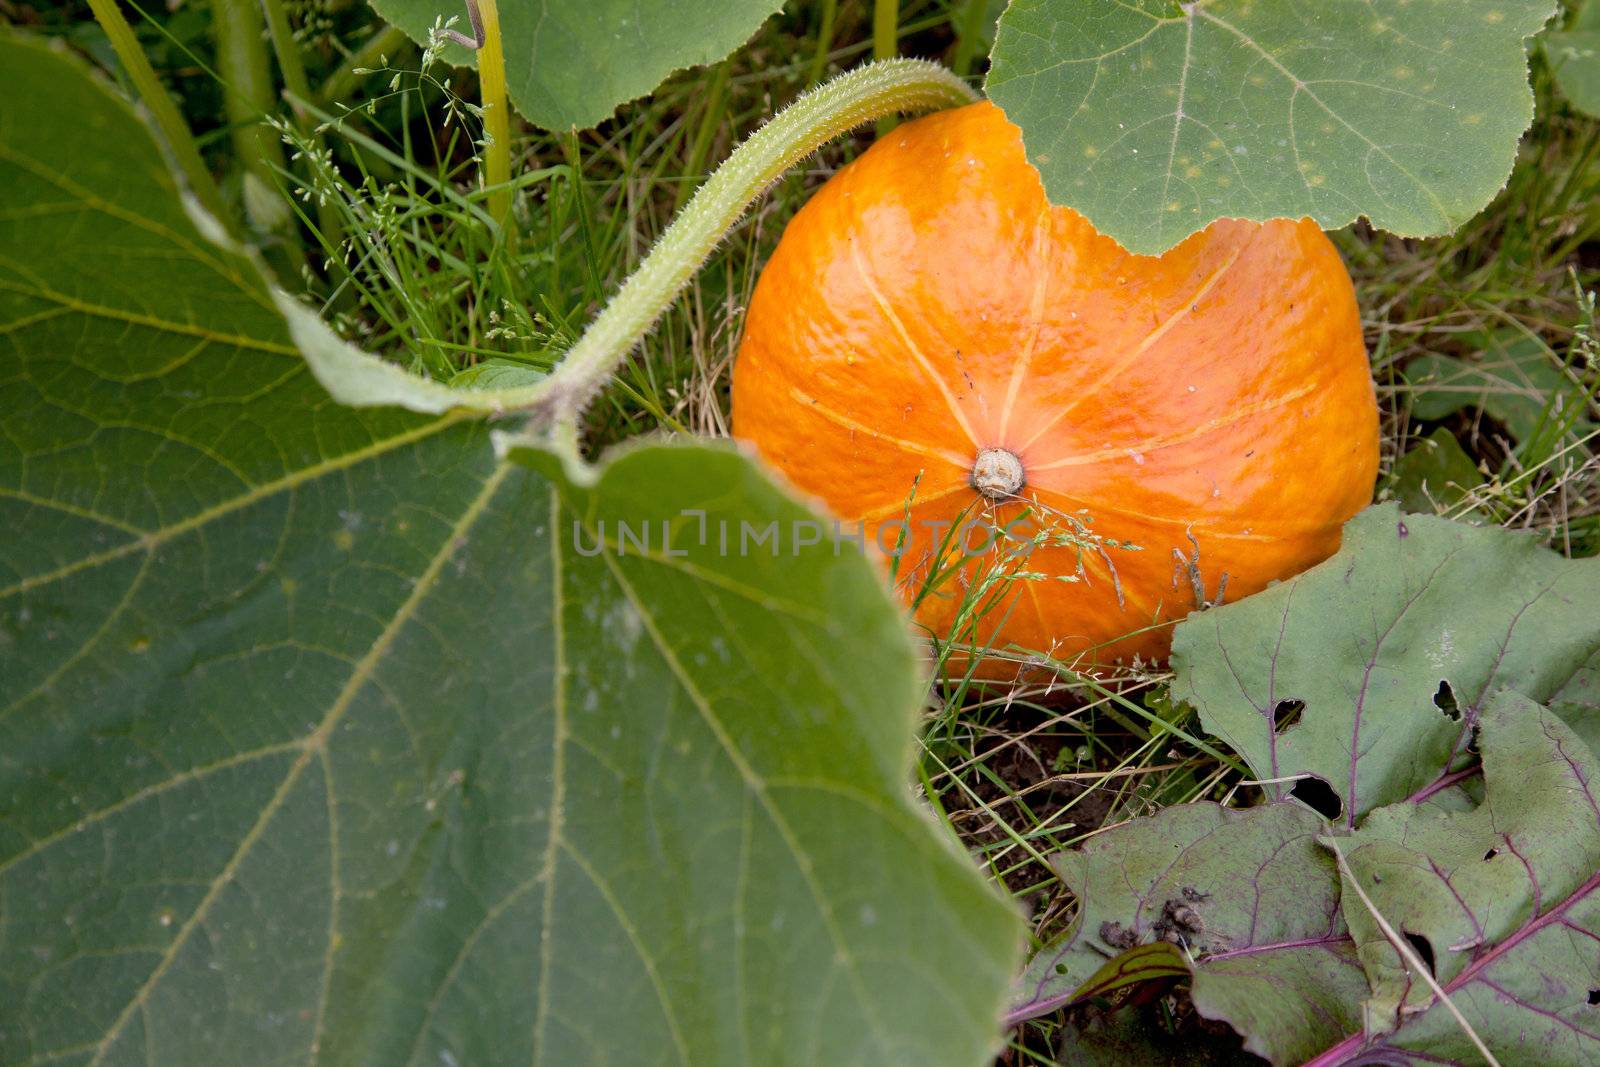 orange pumpkin on plant in the field